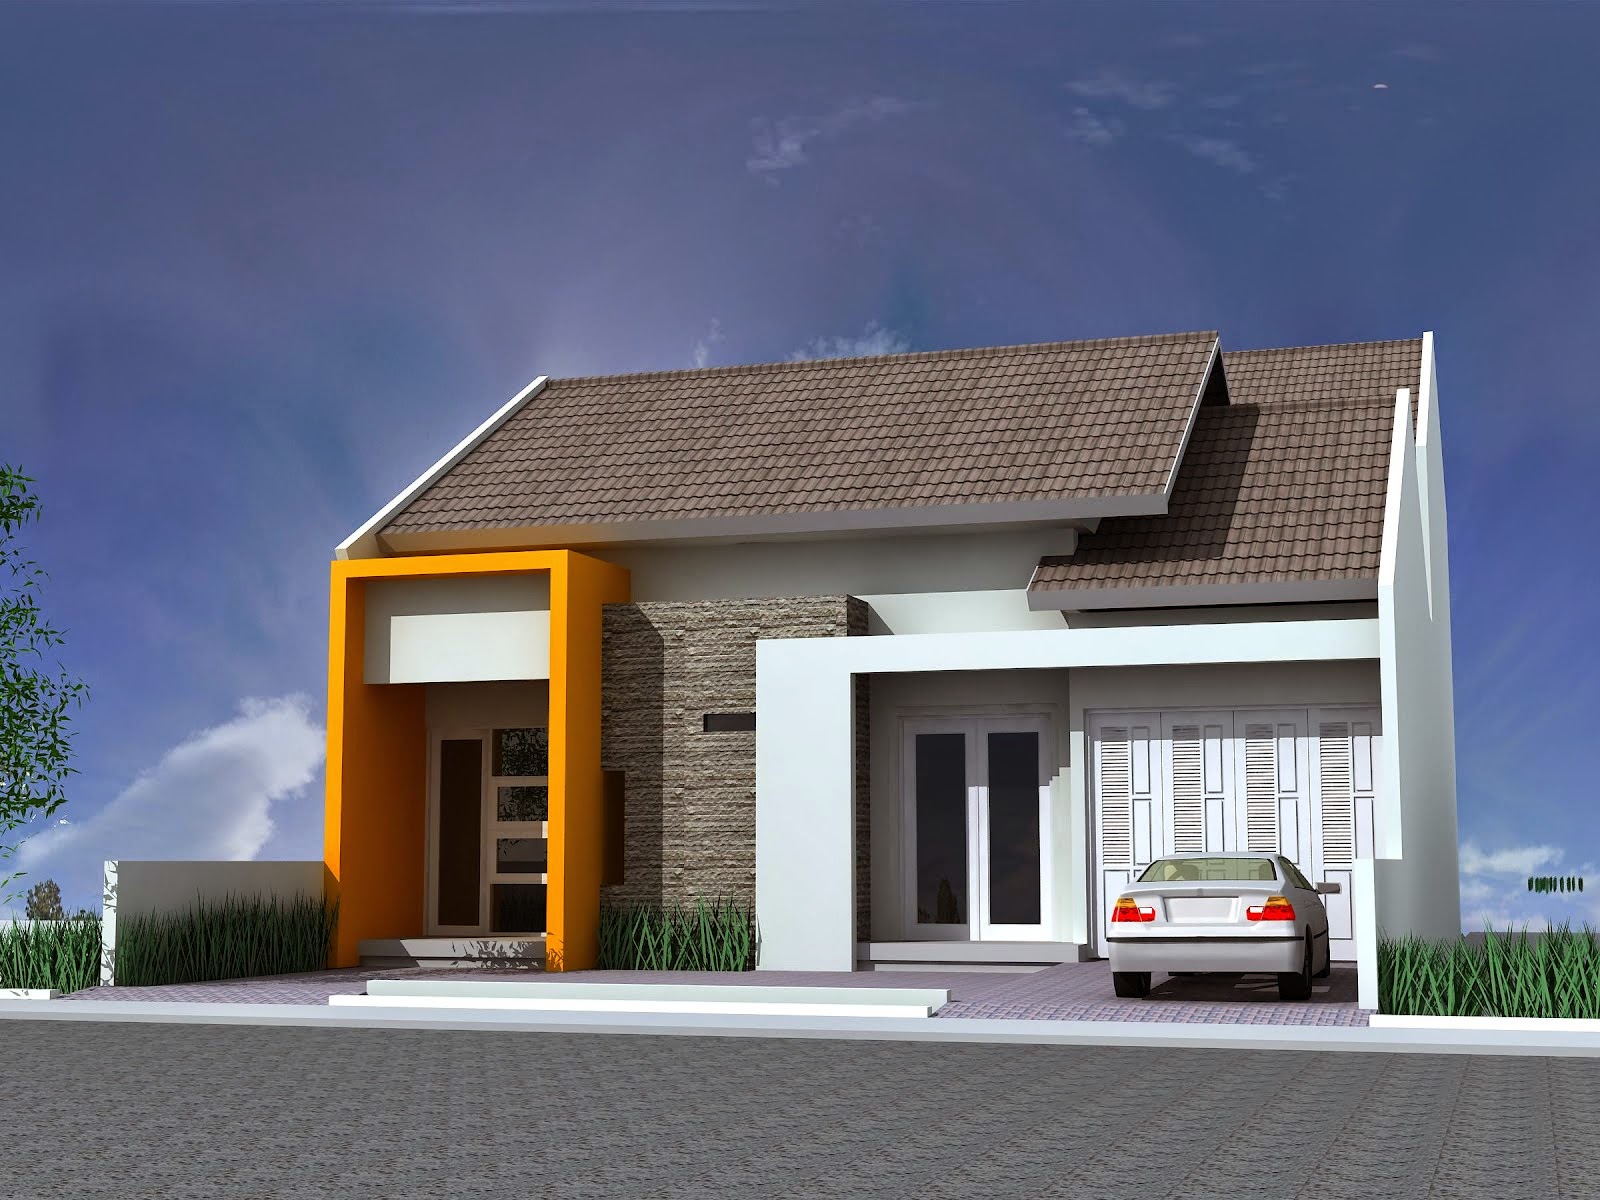 Gambar Rumah Minimalis Satu Lantai Terbaru 2015 Desain Rumah